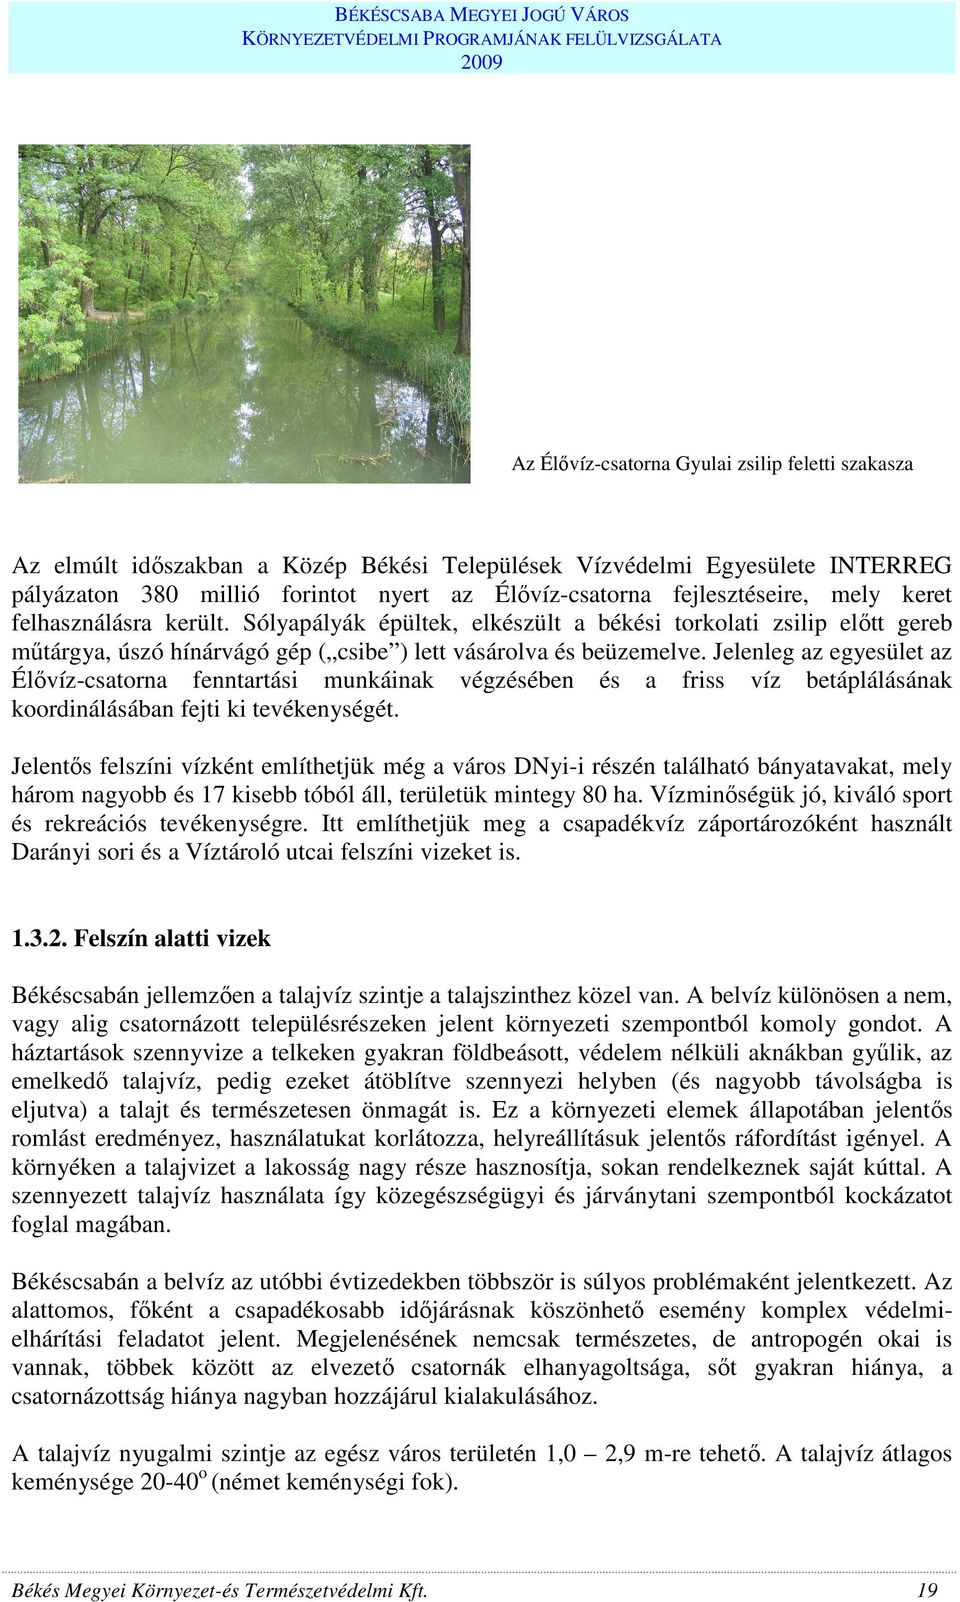 Jelenleg az egyesület az Élıvíz-csatorna fenntartási munkáinak végzésében és a friss víz betáplálásának koordinálásában fejti ki tevékenységét.